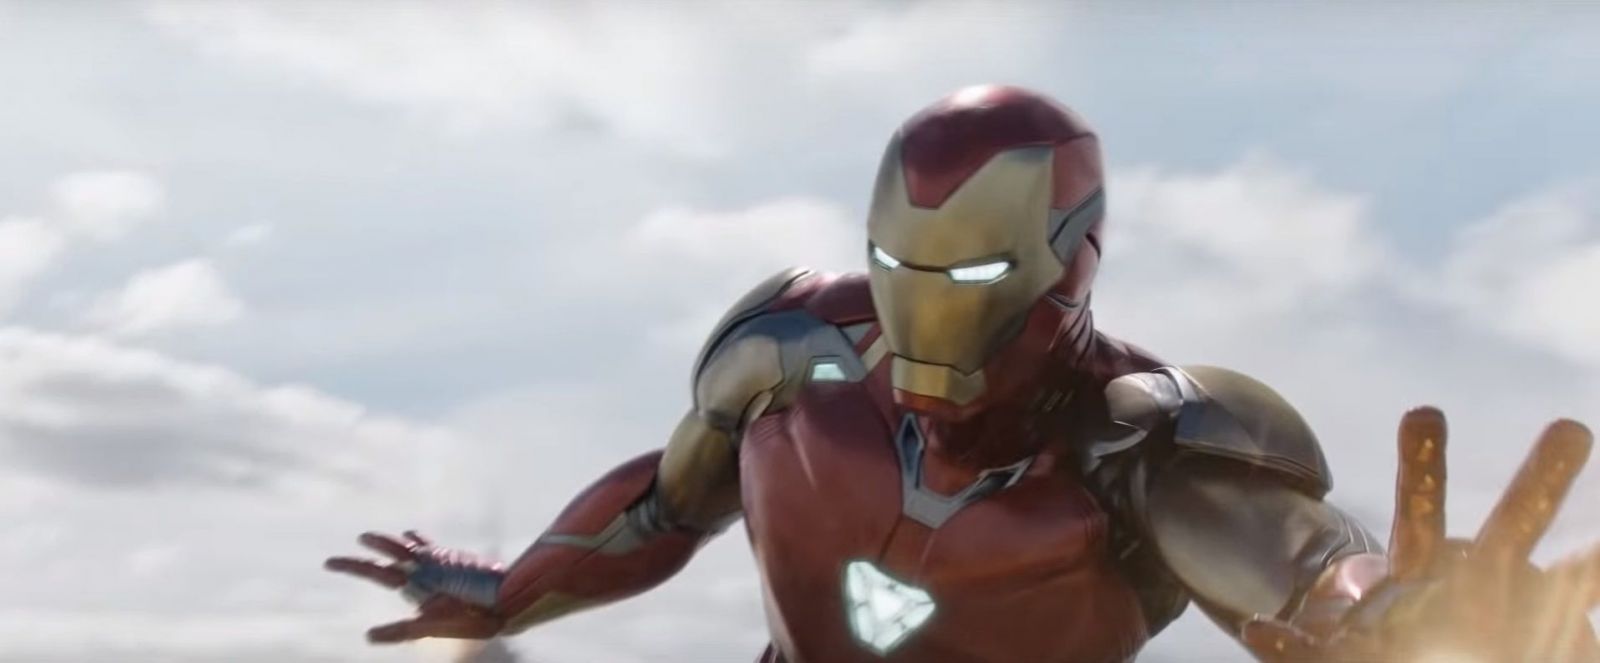 Iron Manove posledné slová v Endgame vznikli na poslednú chvíľu. Súhlasil Robert Downey Jr. s koncom filmu?